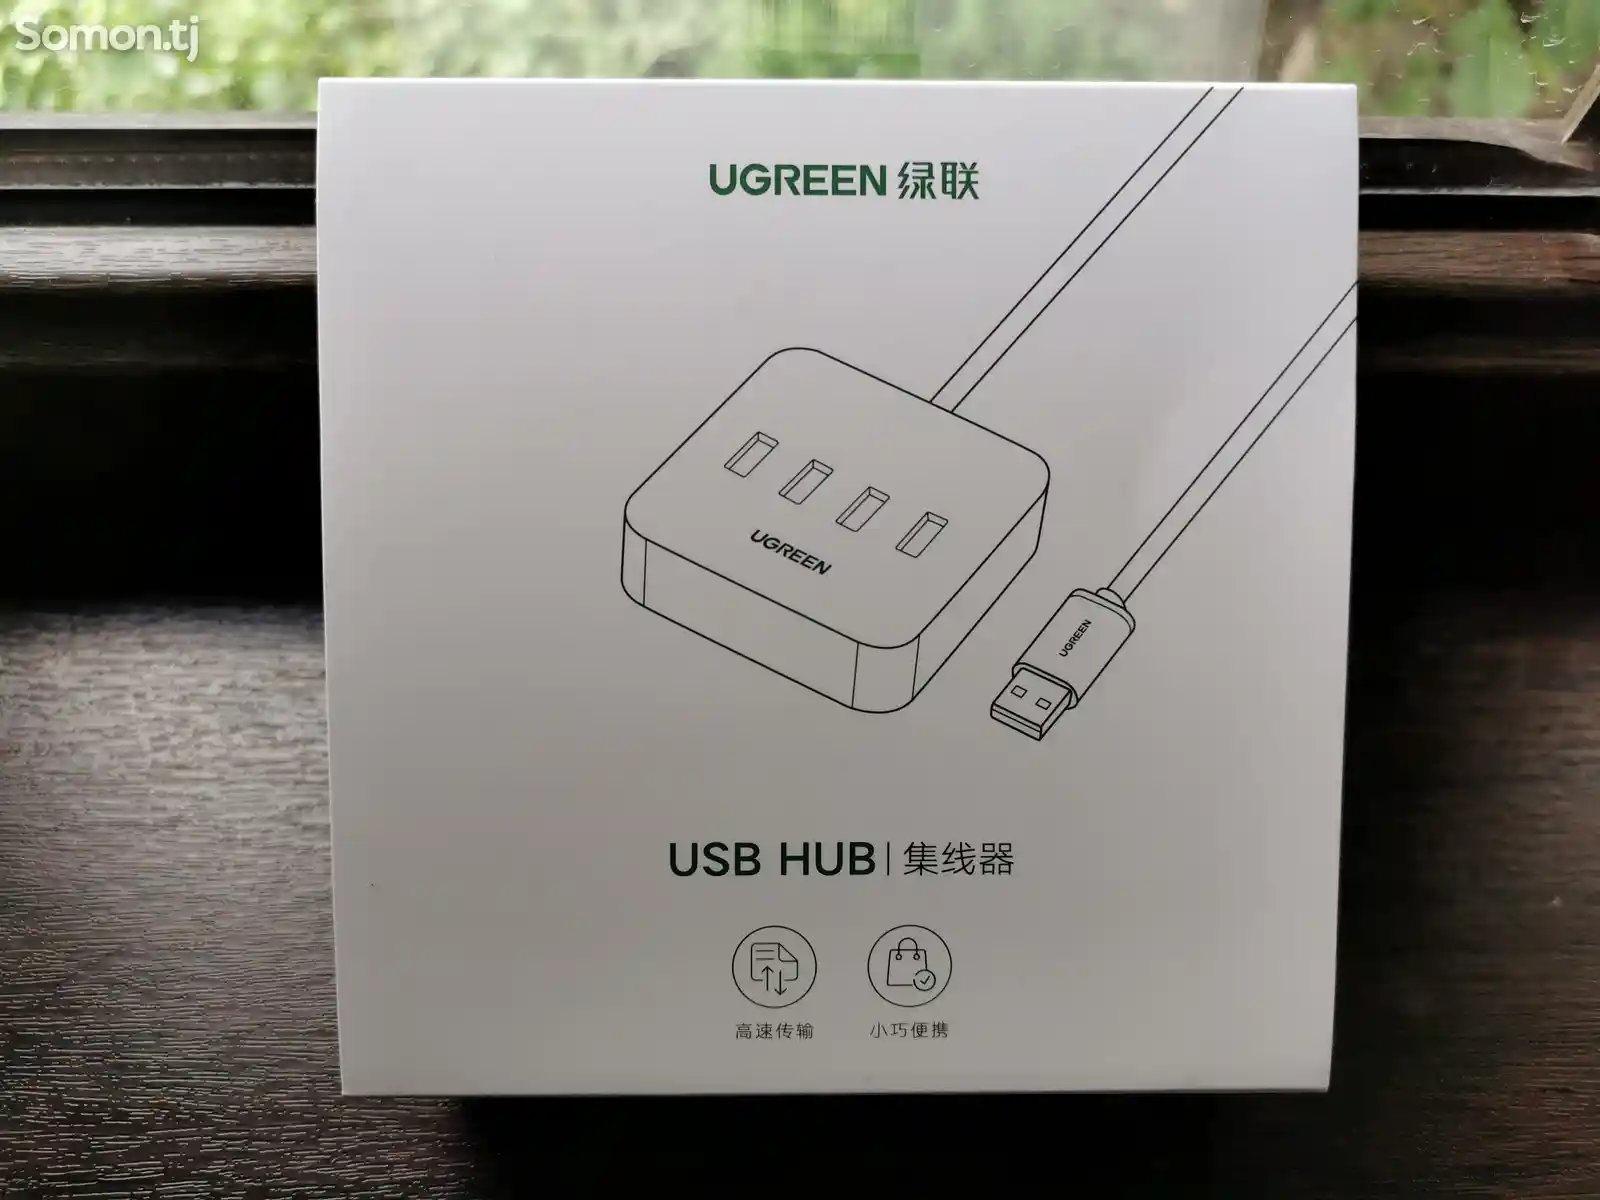 USB HUB Ugreen-4